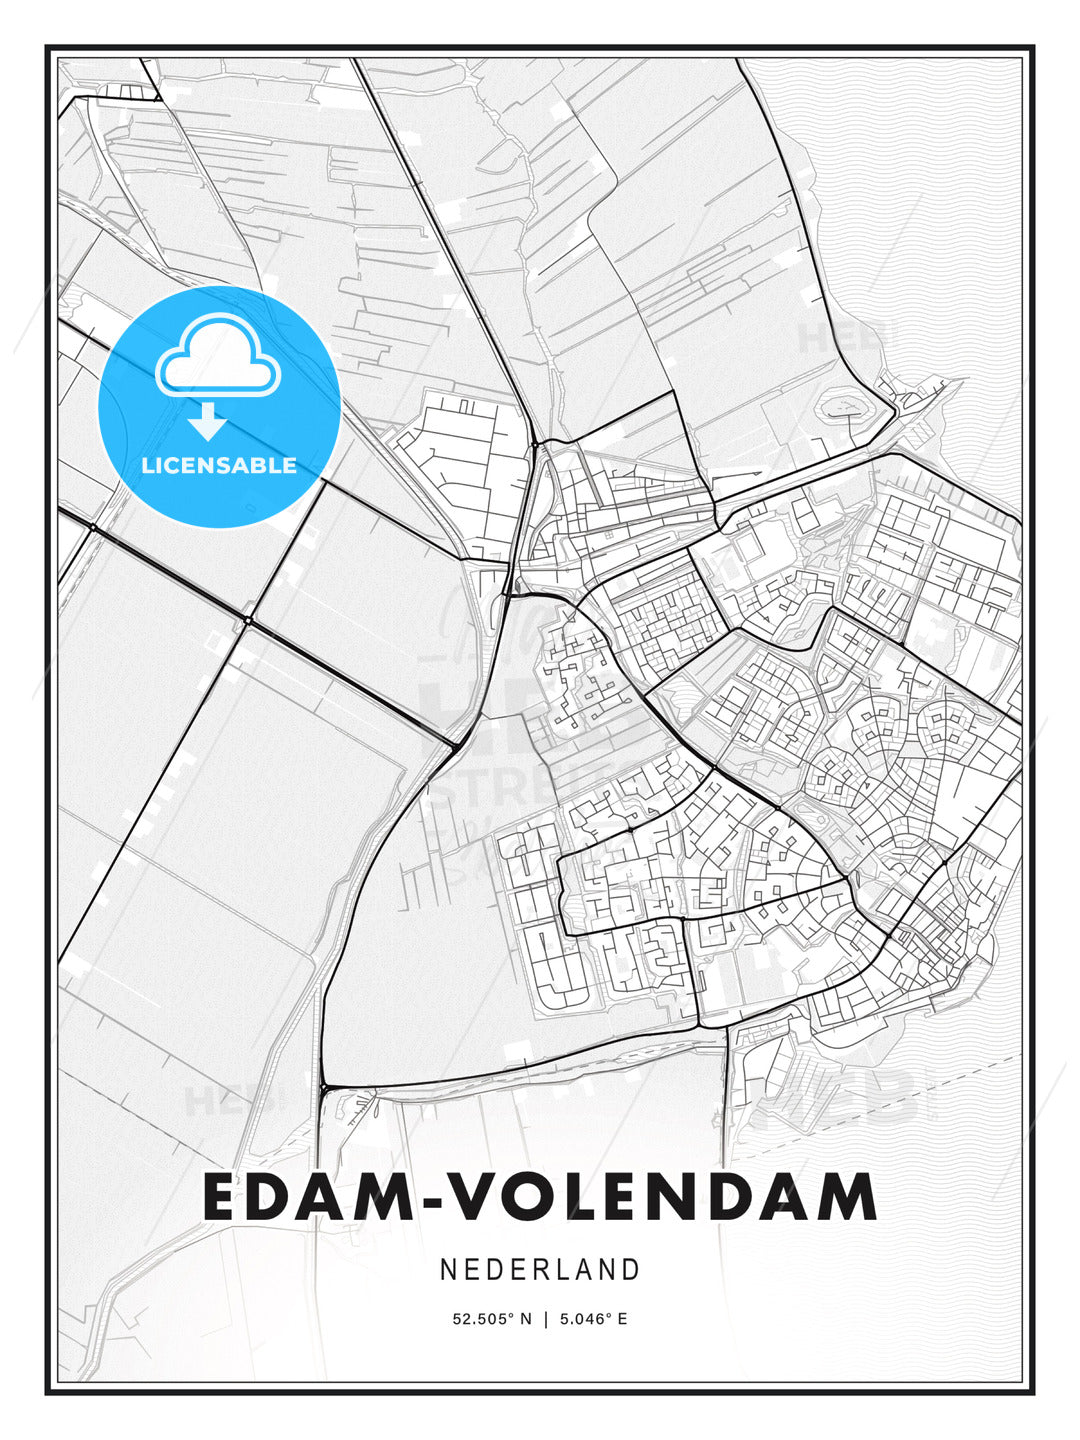 Edam-Volendam, Netherlands, Modern Print Template in Various Formats - HEBSTREITS Sketches